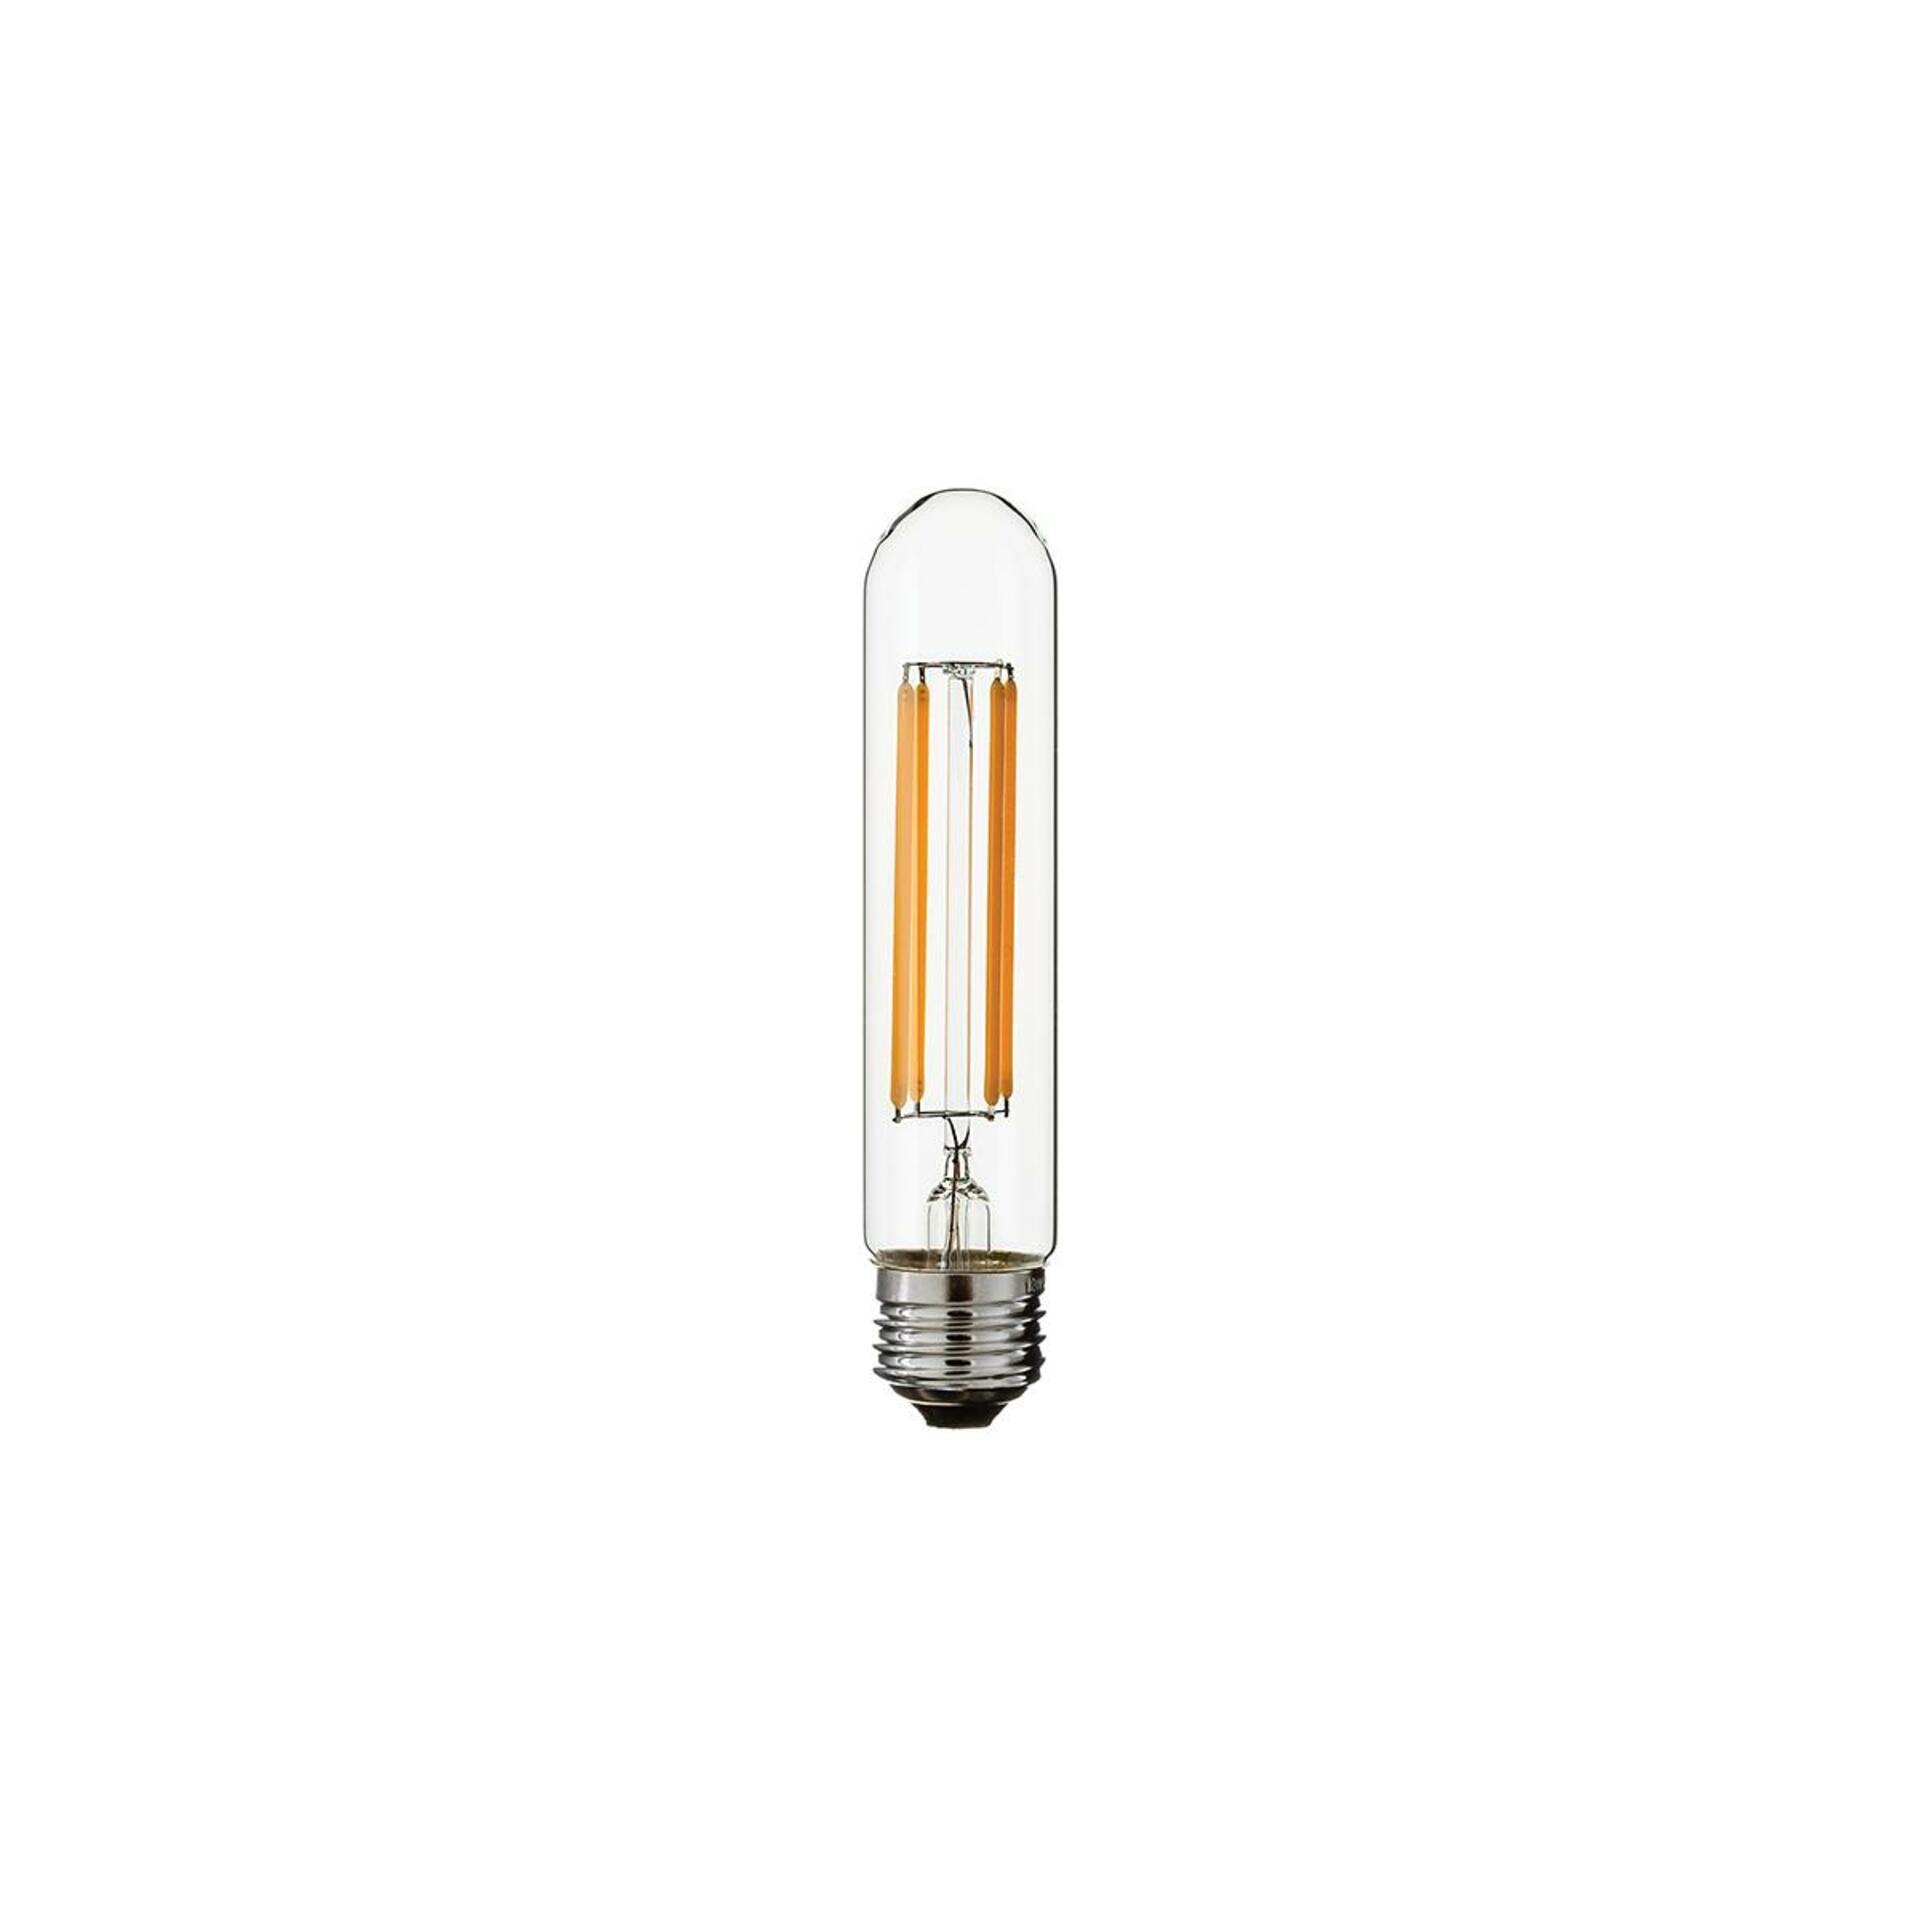 HUDSON VALLEY LED žárovka trubková 4W E27 230V T10 čirá stmívatelná 4ks BLB-4W-T10-5.5-CE-4-PACK